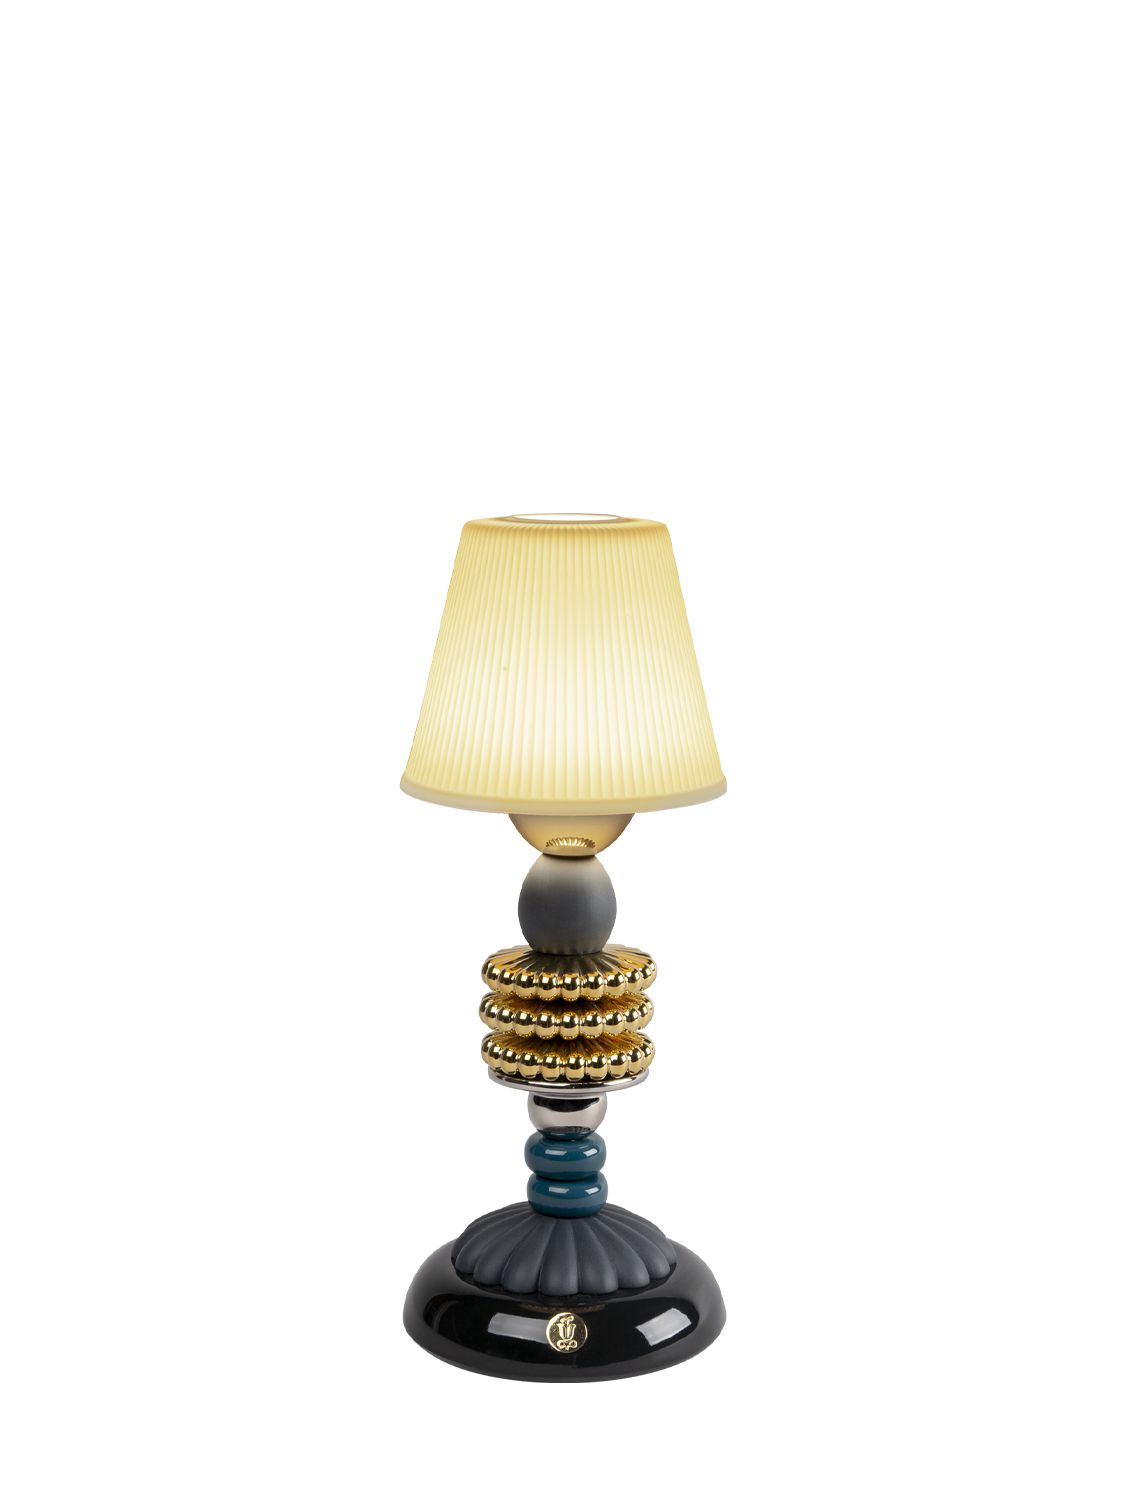 Image of Firefly Lamp By Olga Hanono